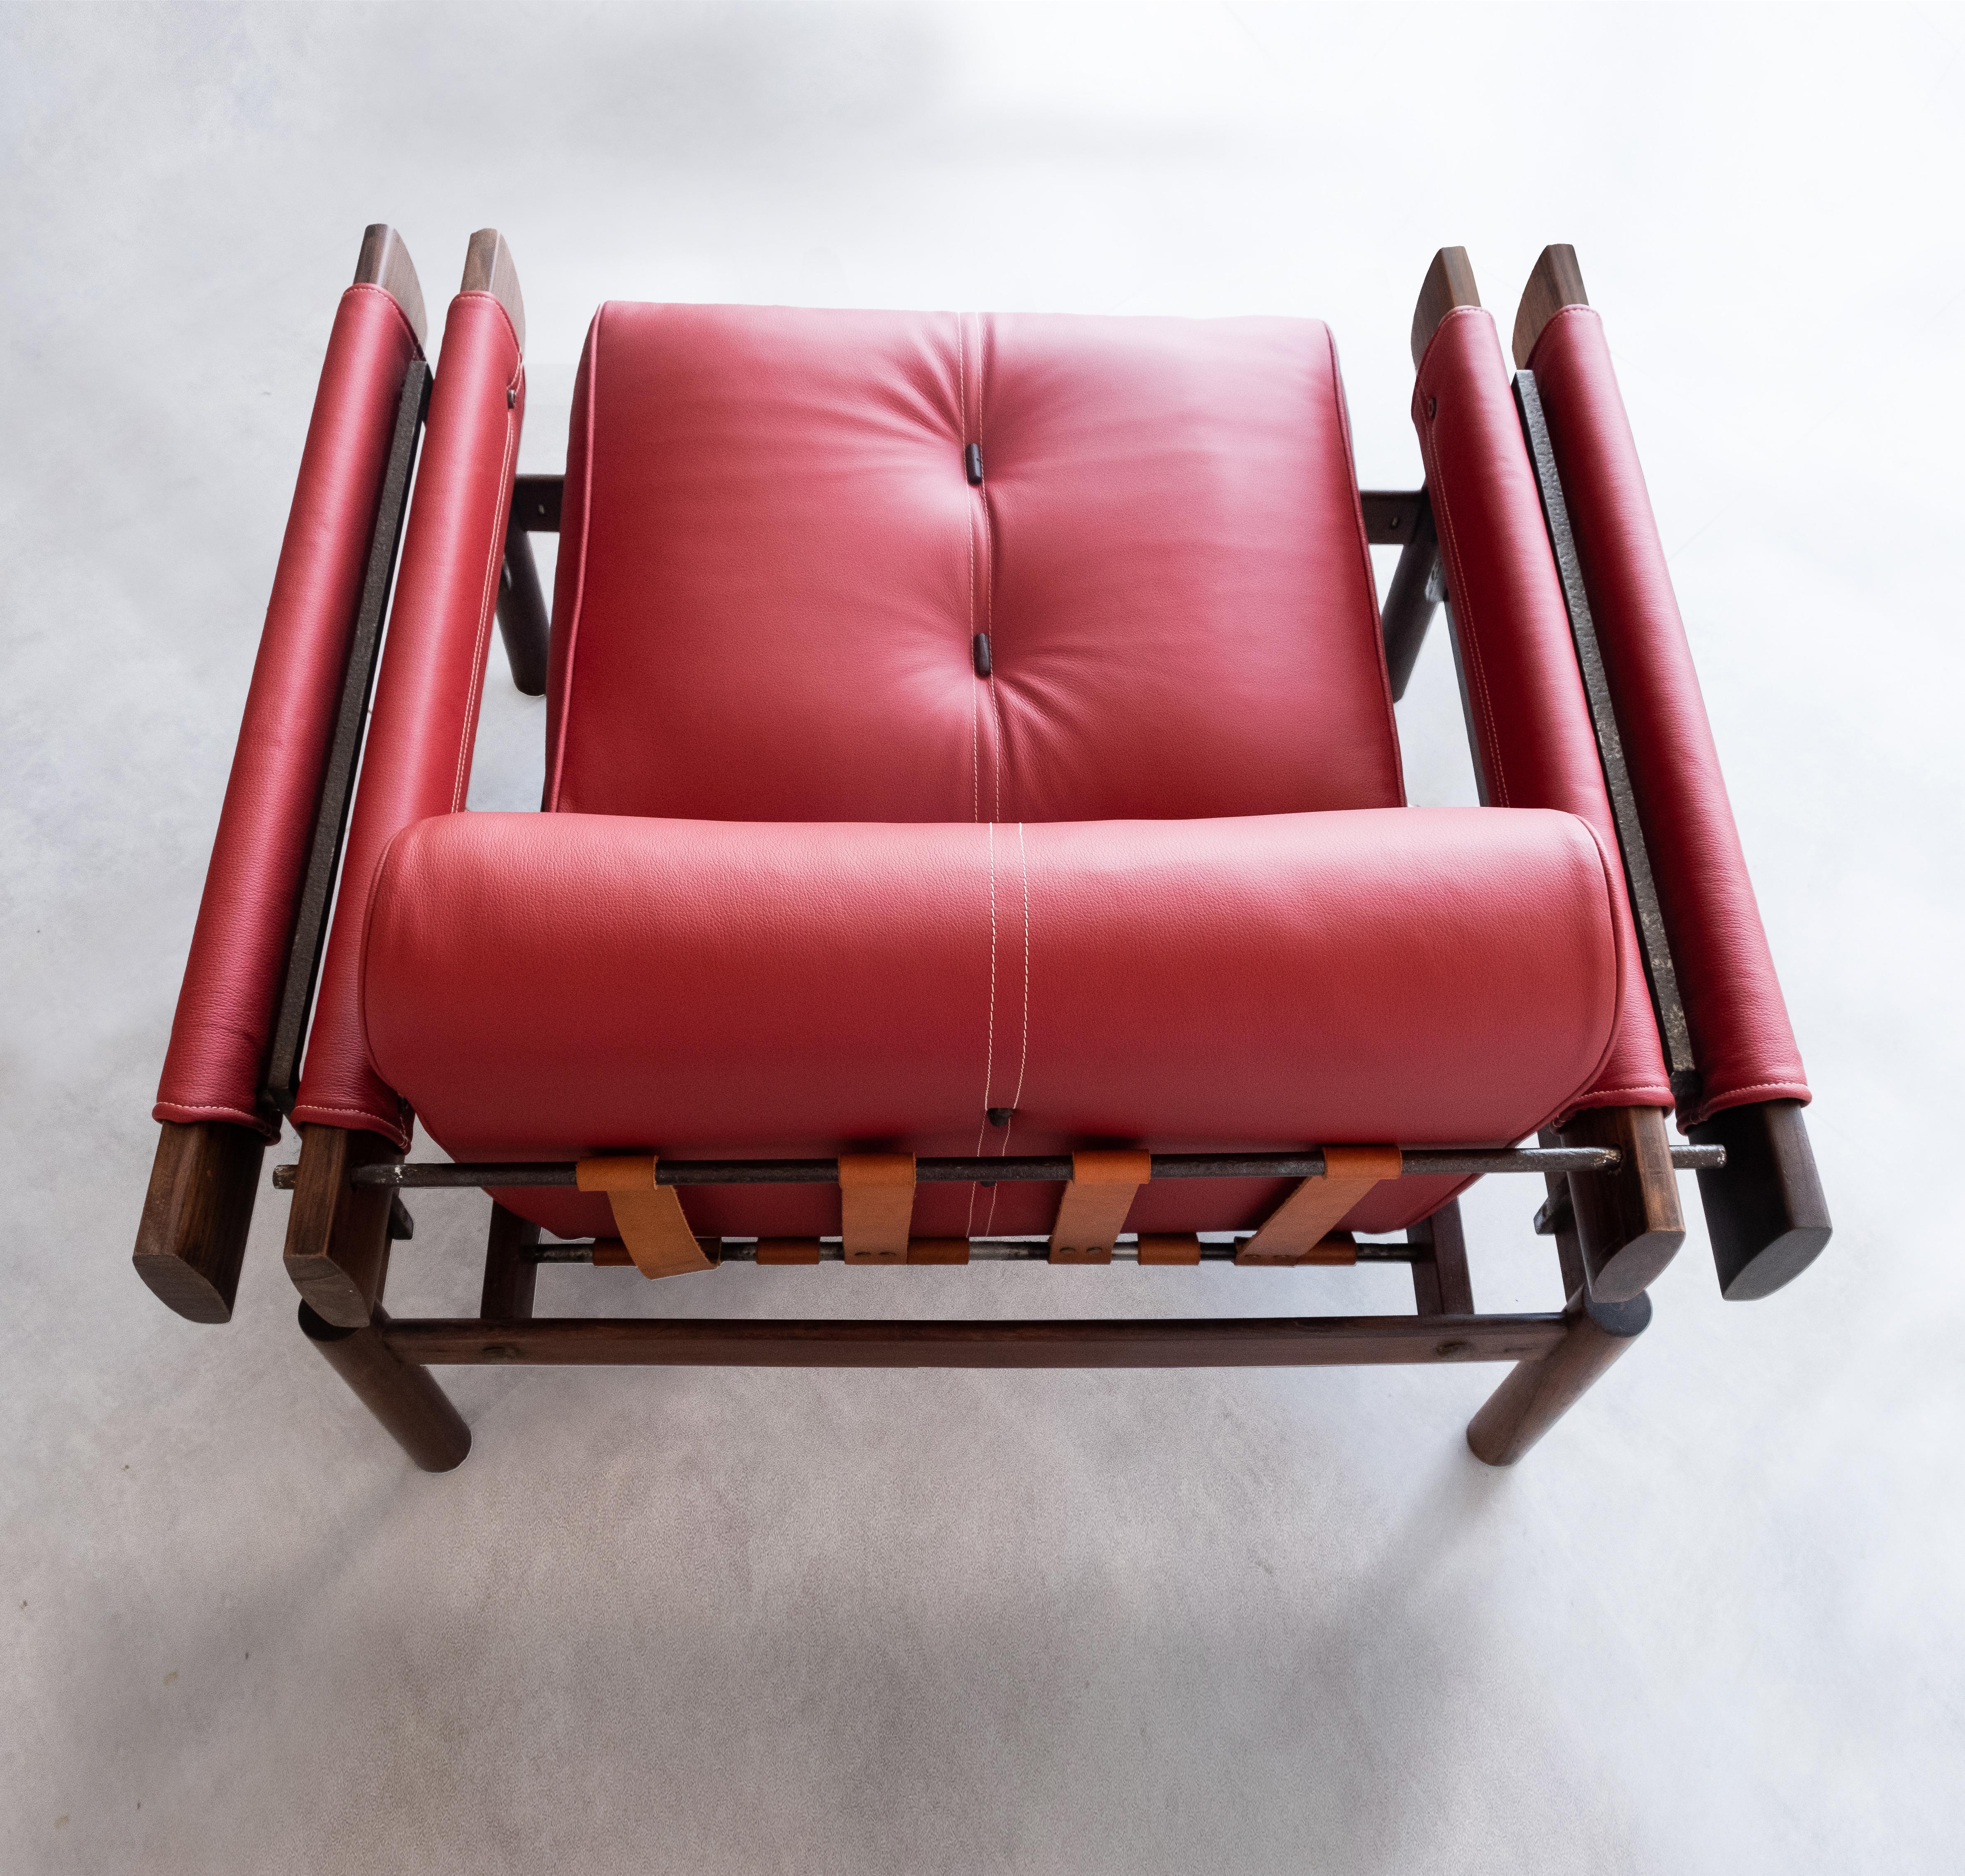 Brésilien Percival Lafer, fauteuils MP-19 du milieu du siècle dernier, Brésil   en vente